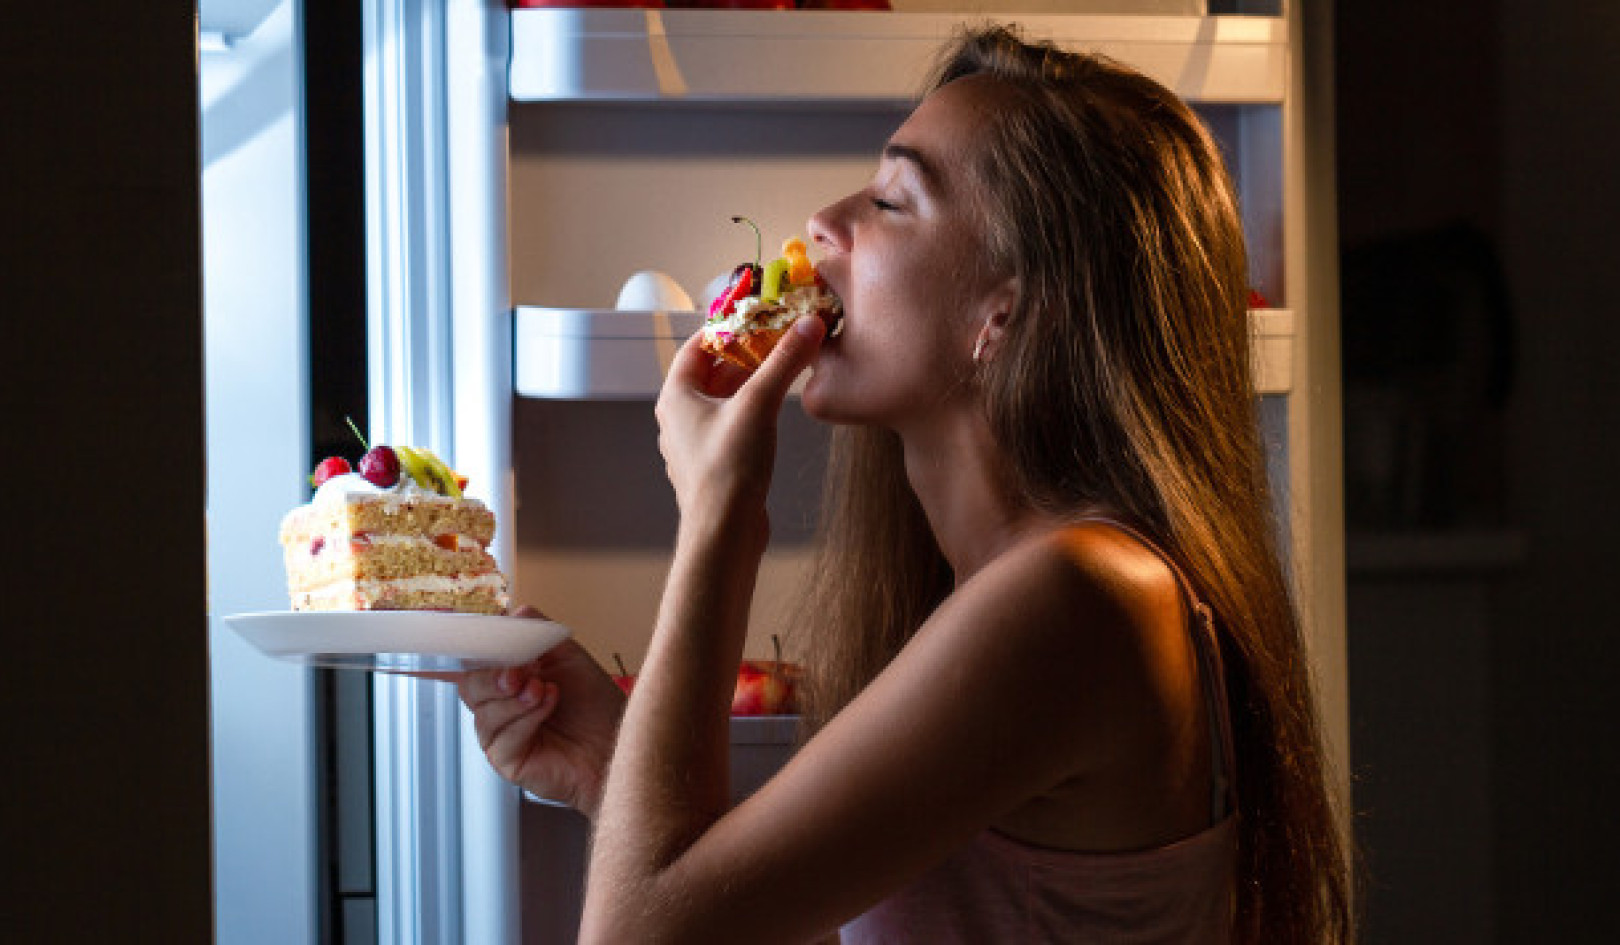 الواقع الحلو والمر: إعادة التفكير في عاداتنا الغذائية